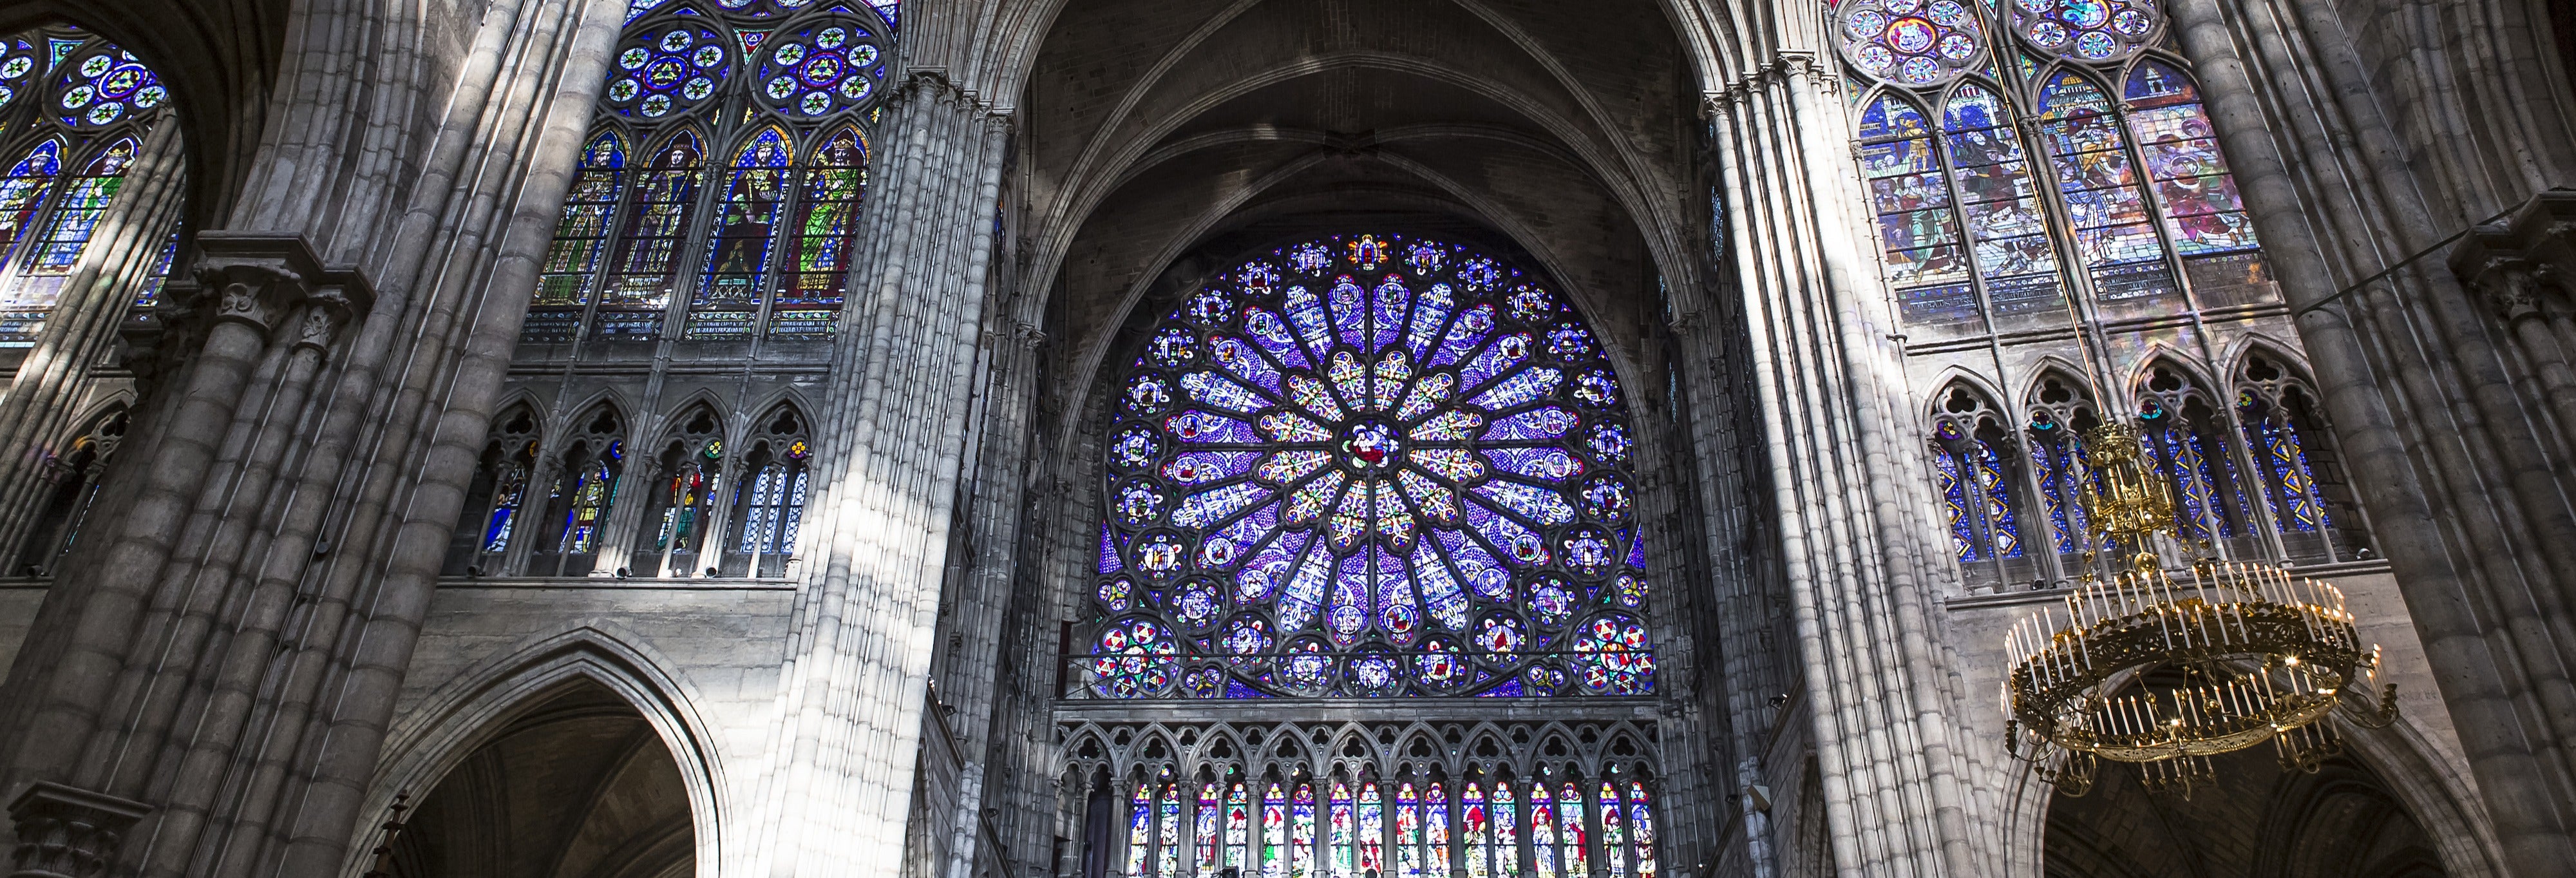 Ingresso da Basílica de Saint-Denis